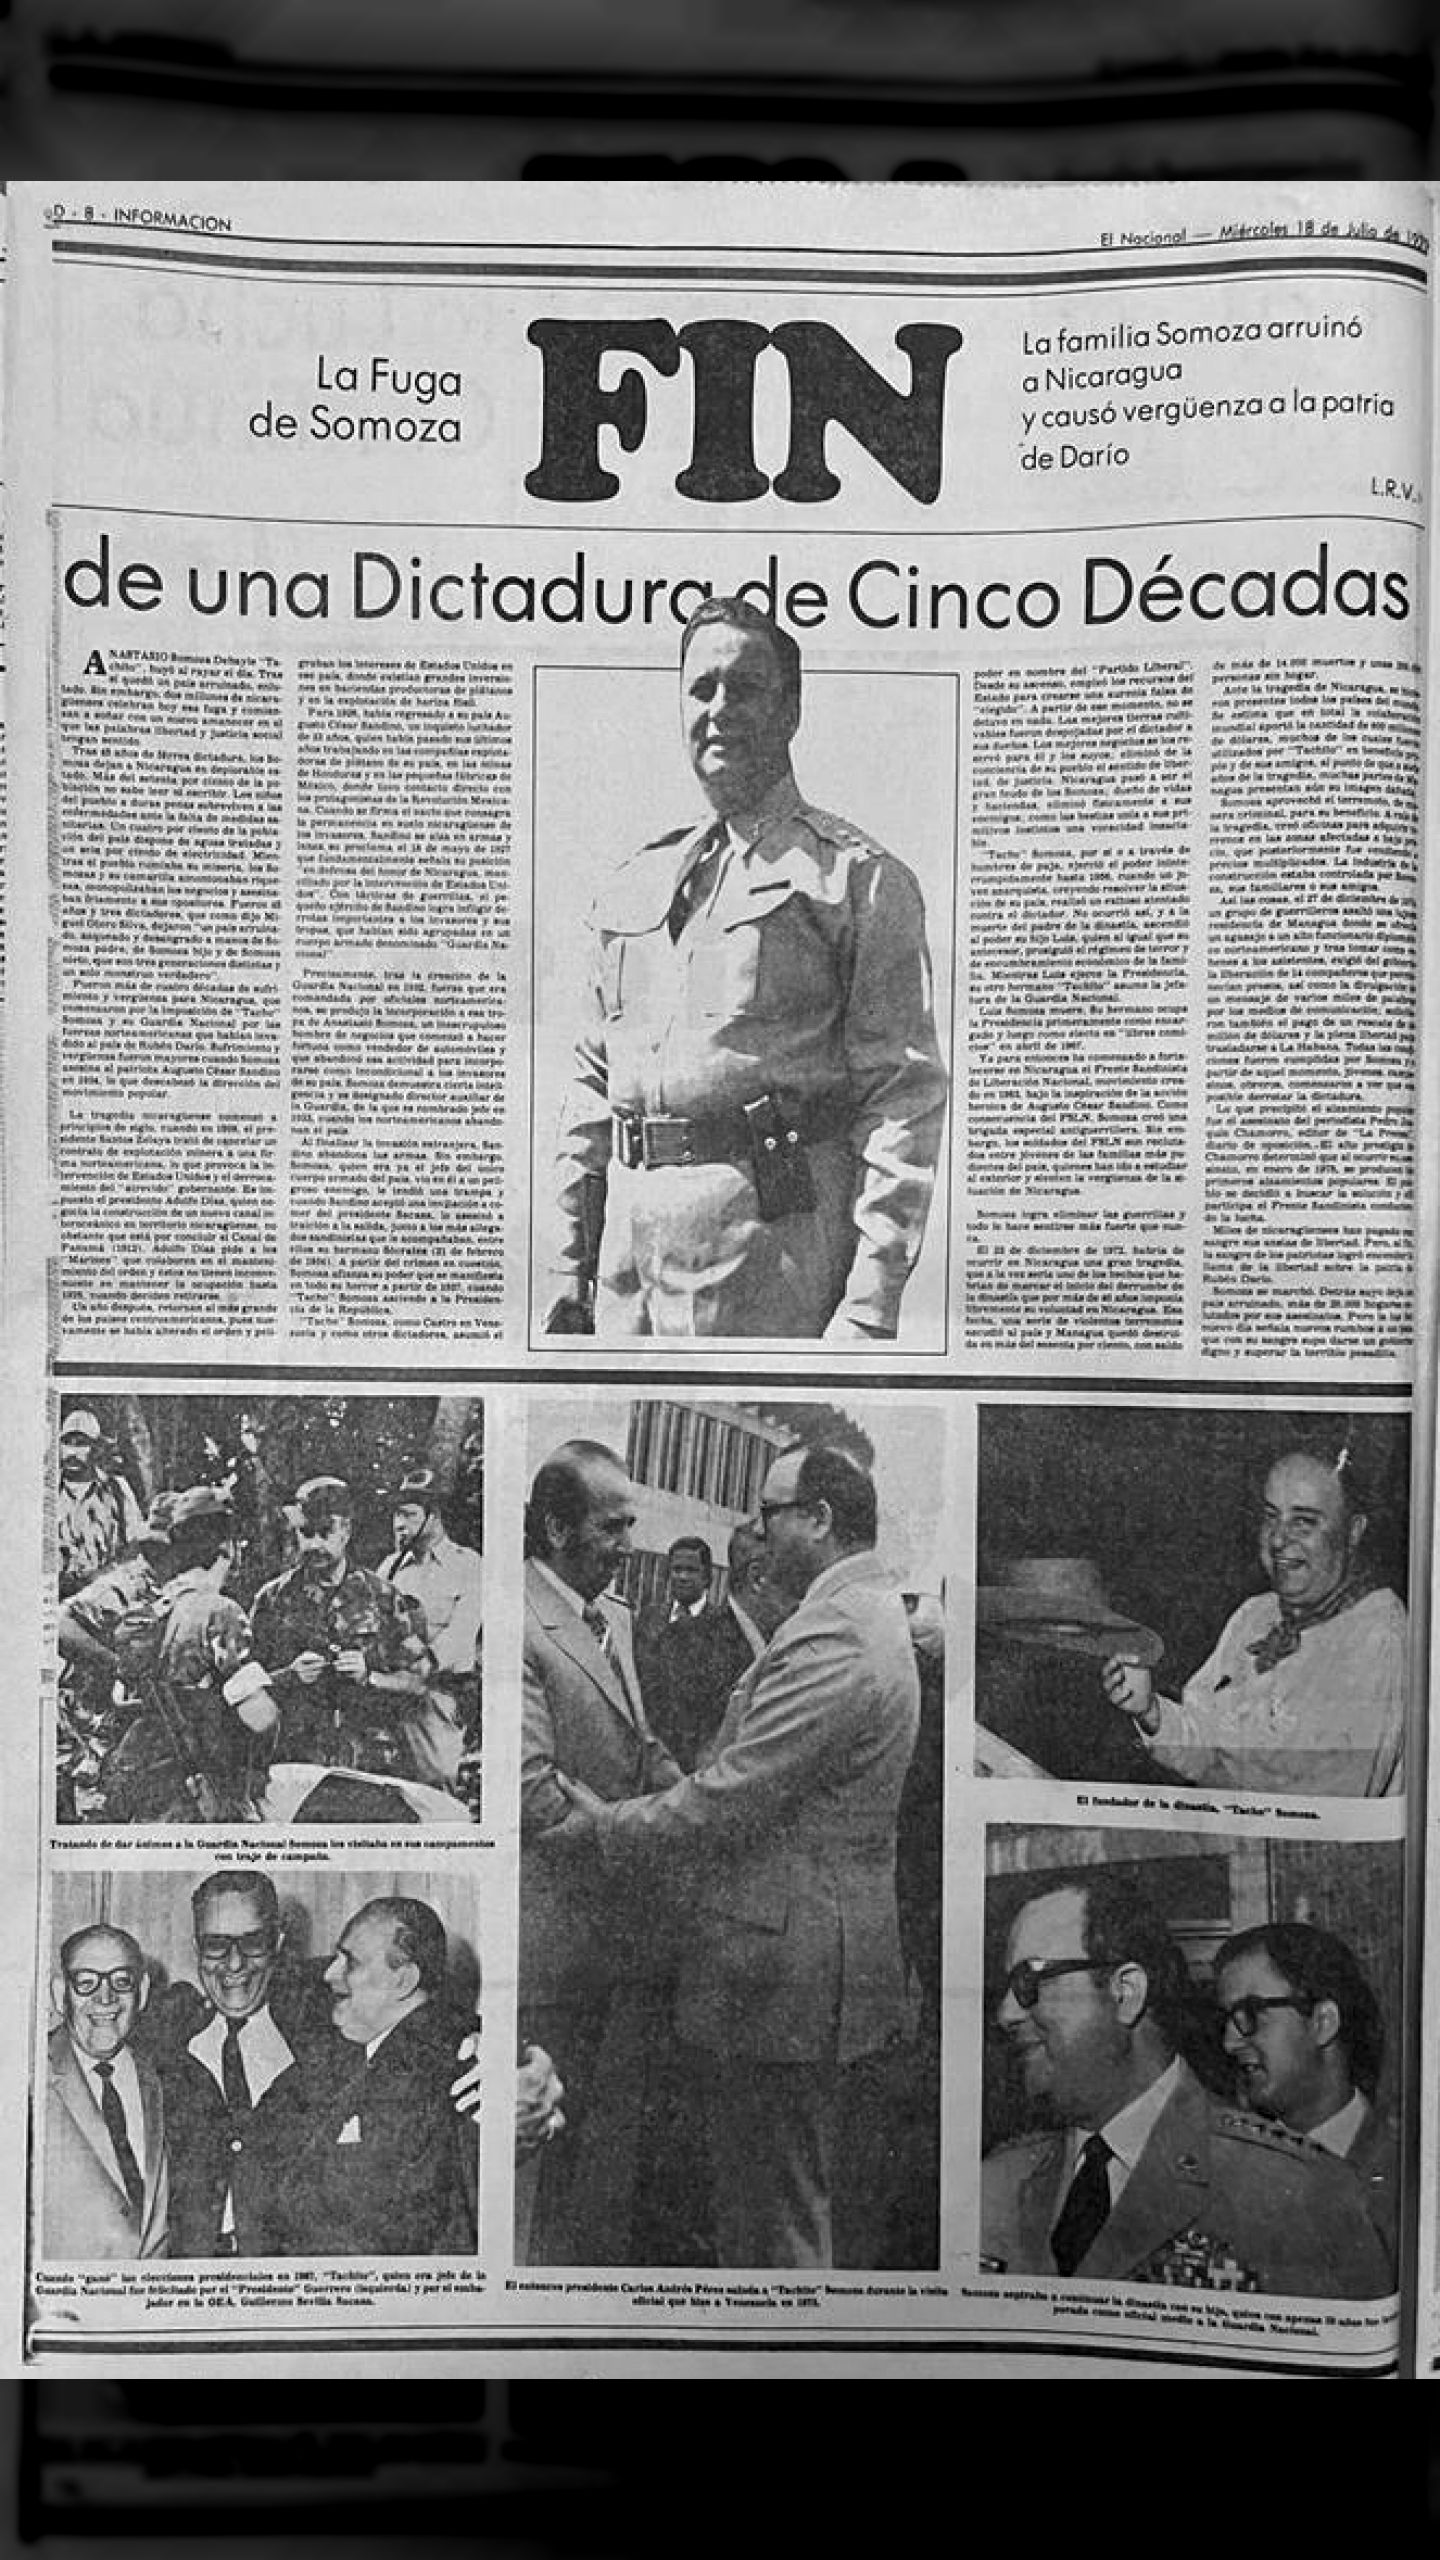 FIN - de una dictadura de cinco décadas (El Nacional, 18 de julio 1979)